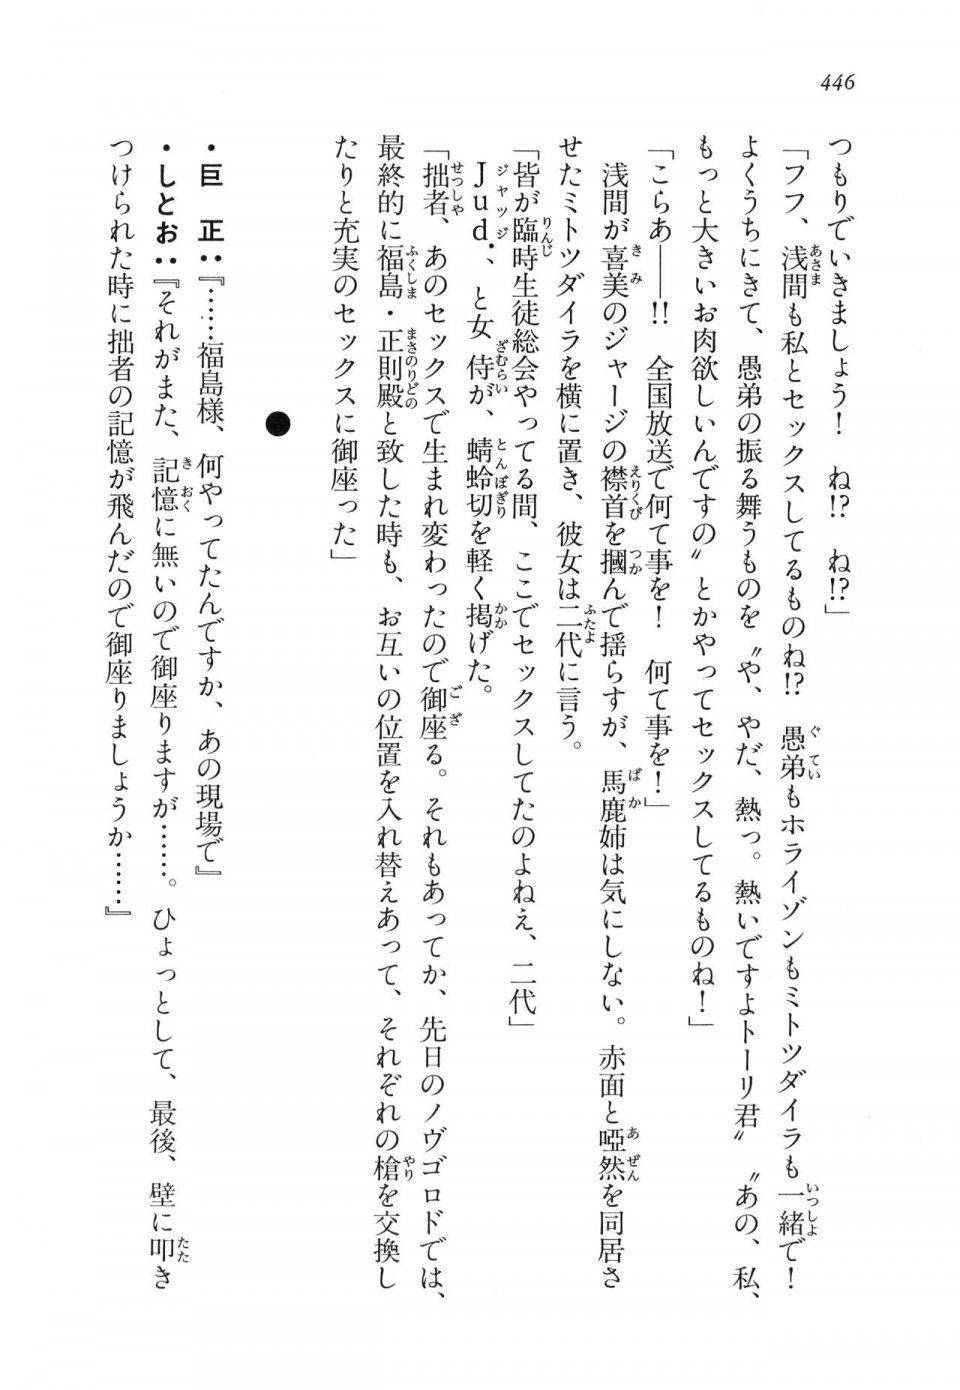 Kyoukai Senjou no Horizon LN Vol 11(5A) - Photo #446